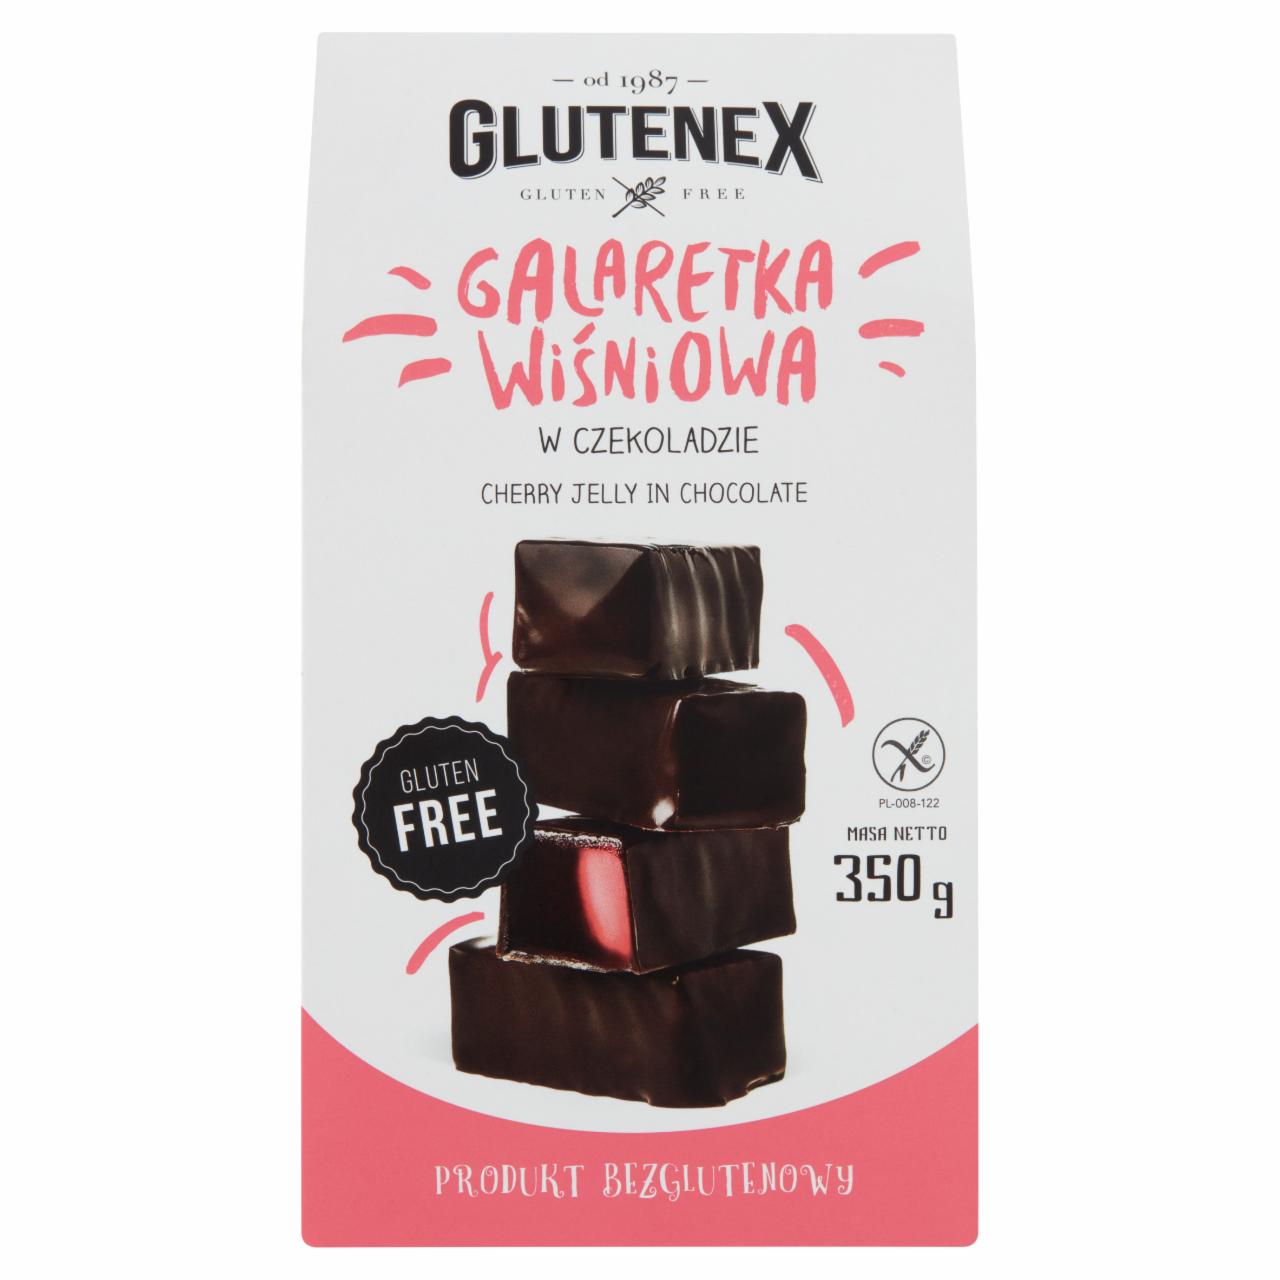 Zdjęcia - Glutenex Galaretka wiśniowa w czekoladzie 350 g